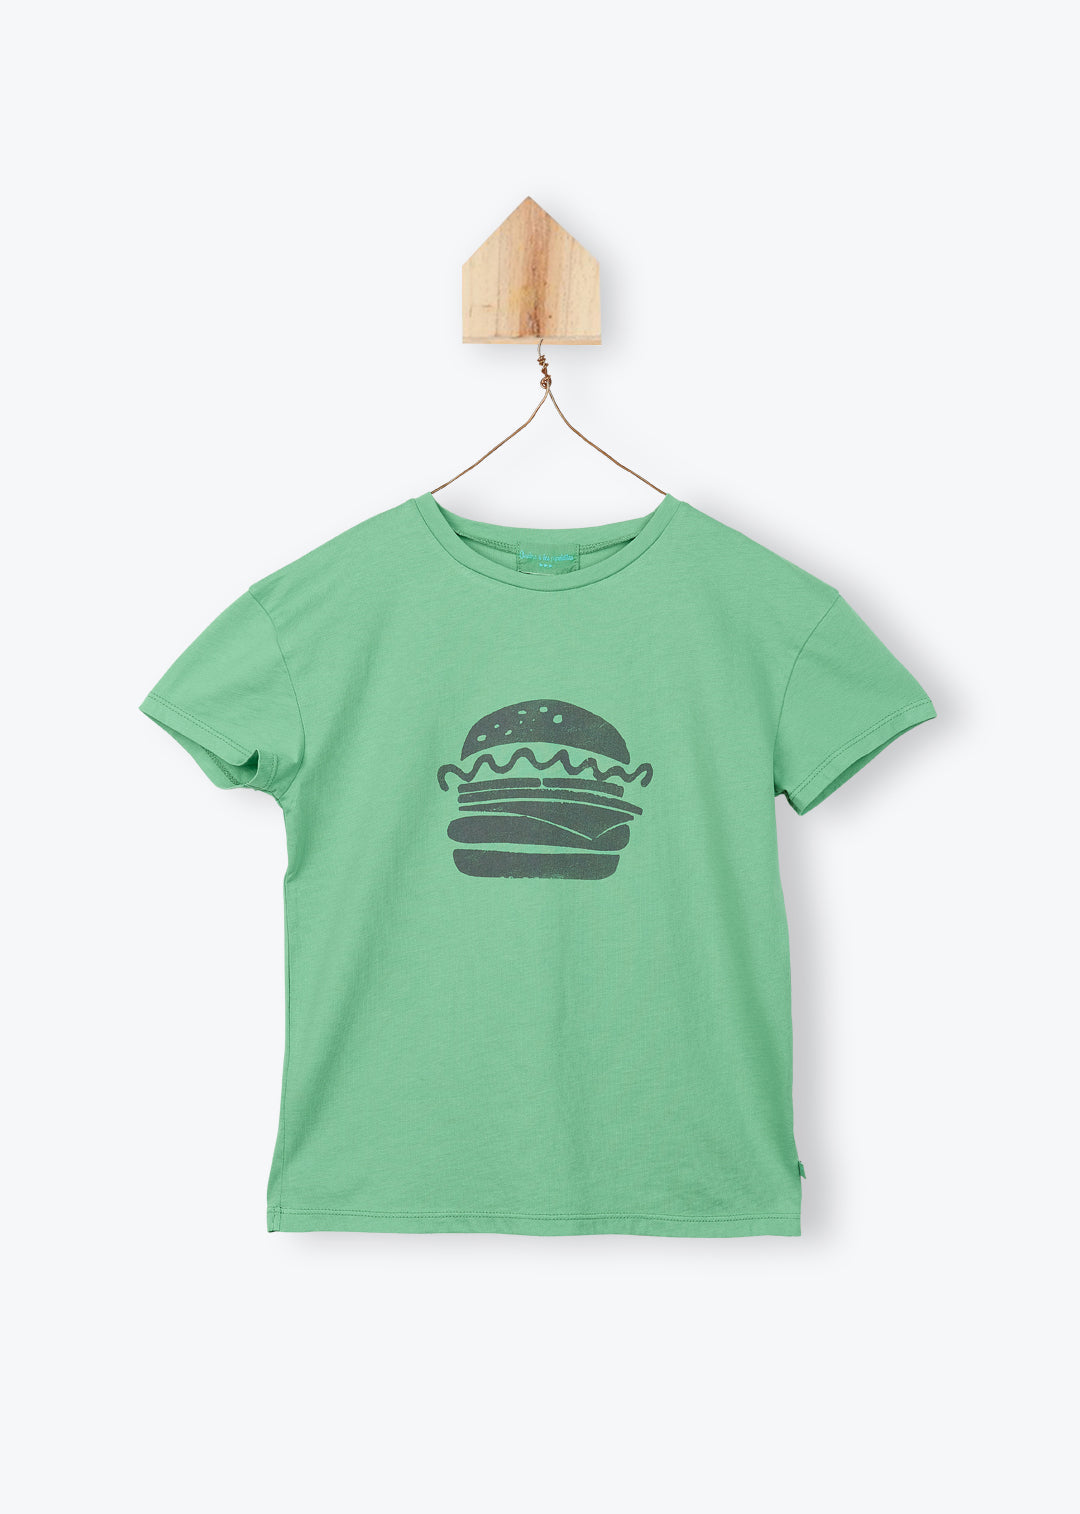 T-Shirt Boy Hamburger - قميص